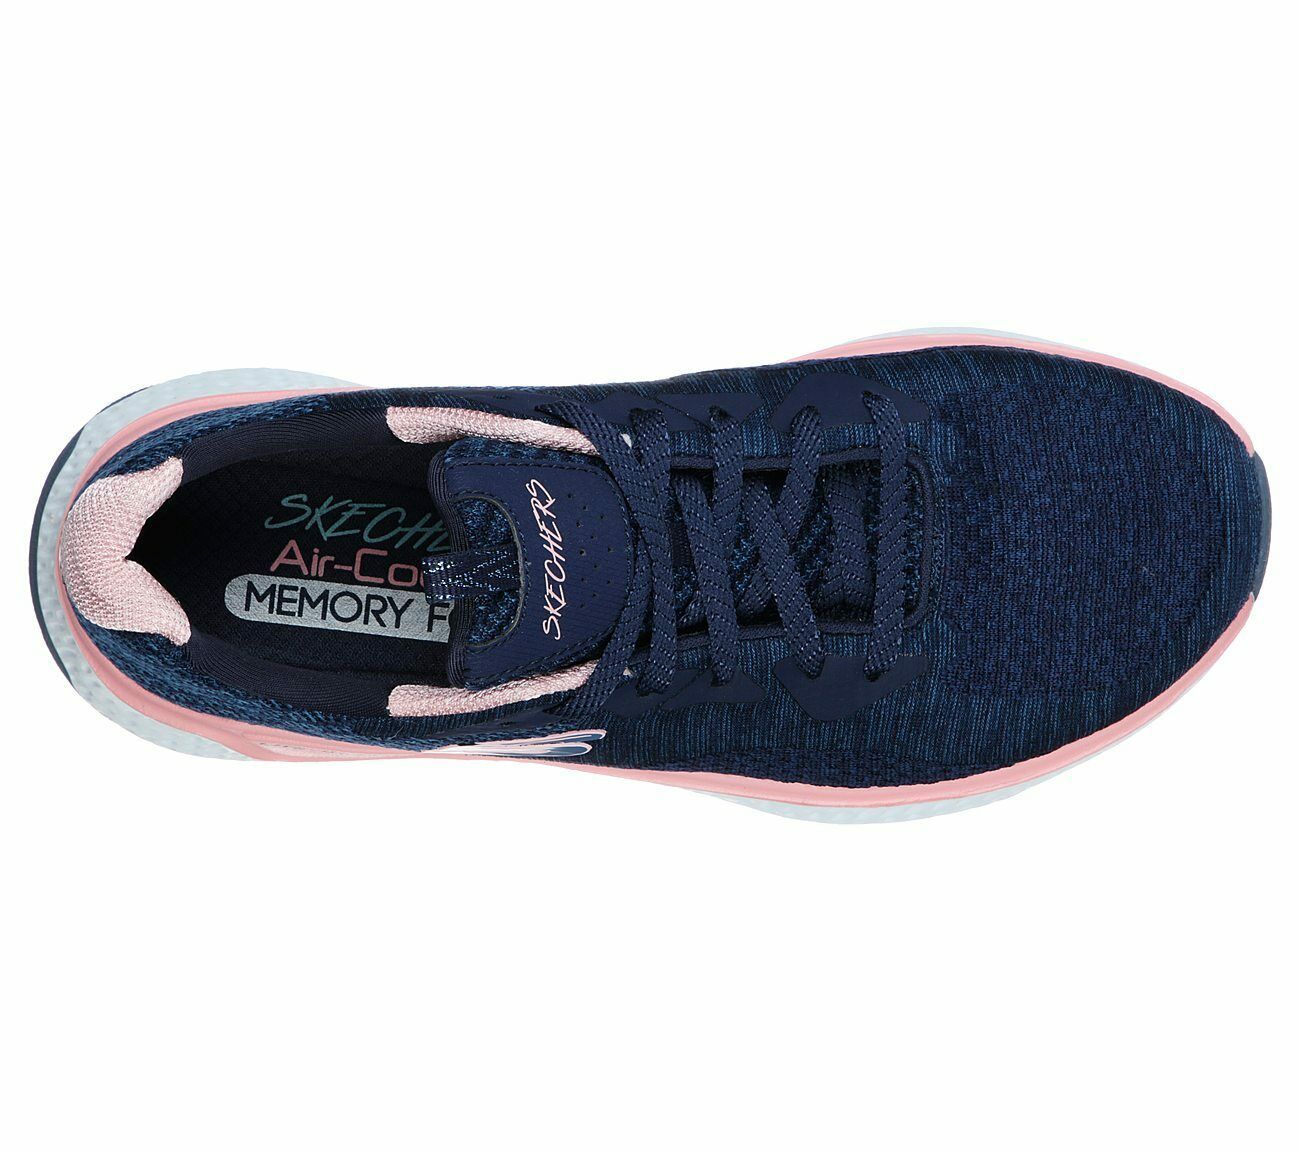 Skechers Wide Fit Navy Shoes Memory Foam Women's Sport Comfort Soft ...